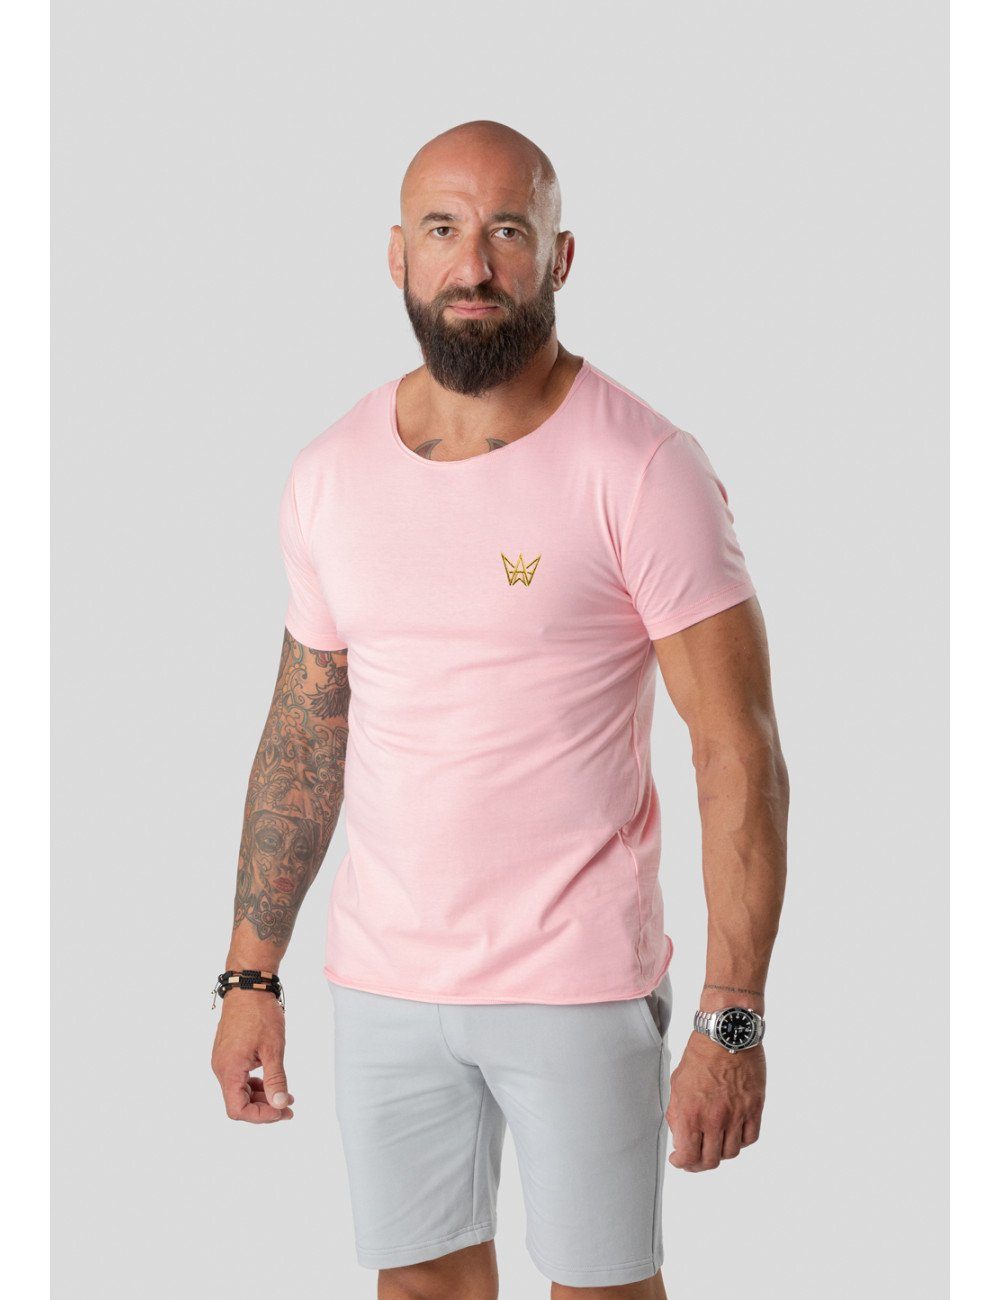 TRES AMIGOS T-Shirt Trendiges Rundhalsshirt mit Logo Rosa